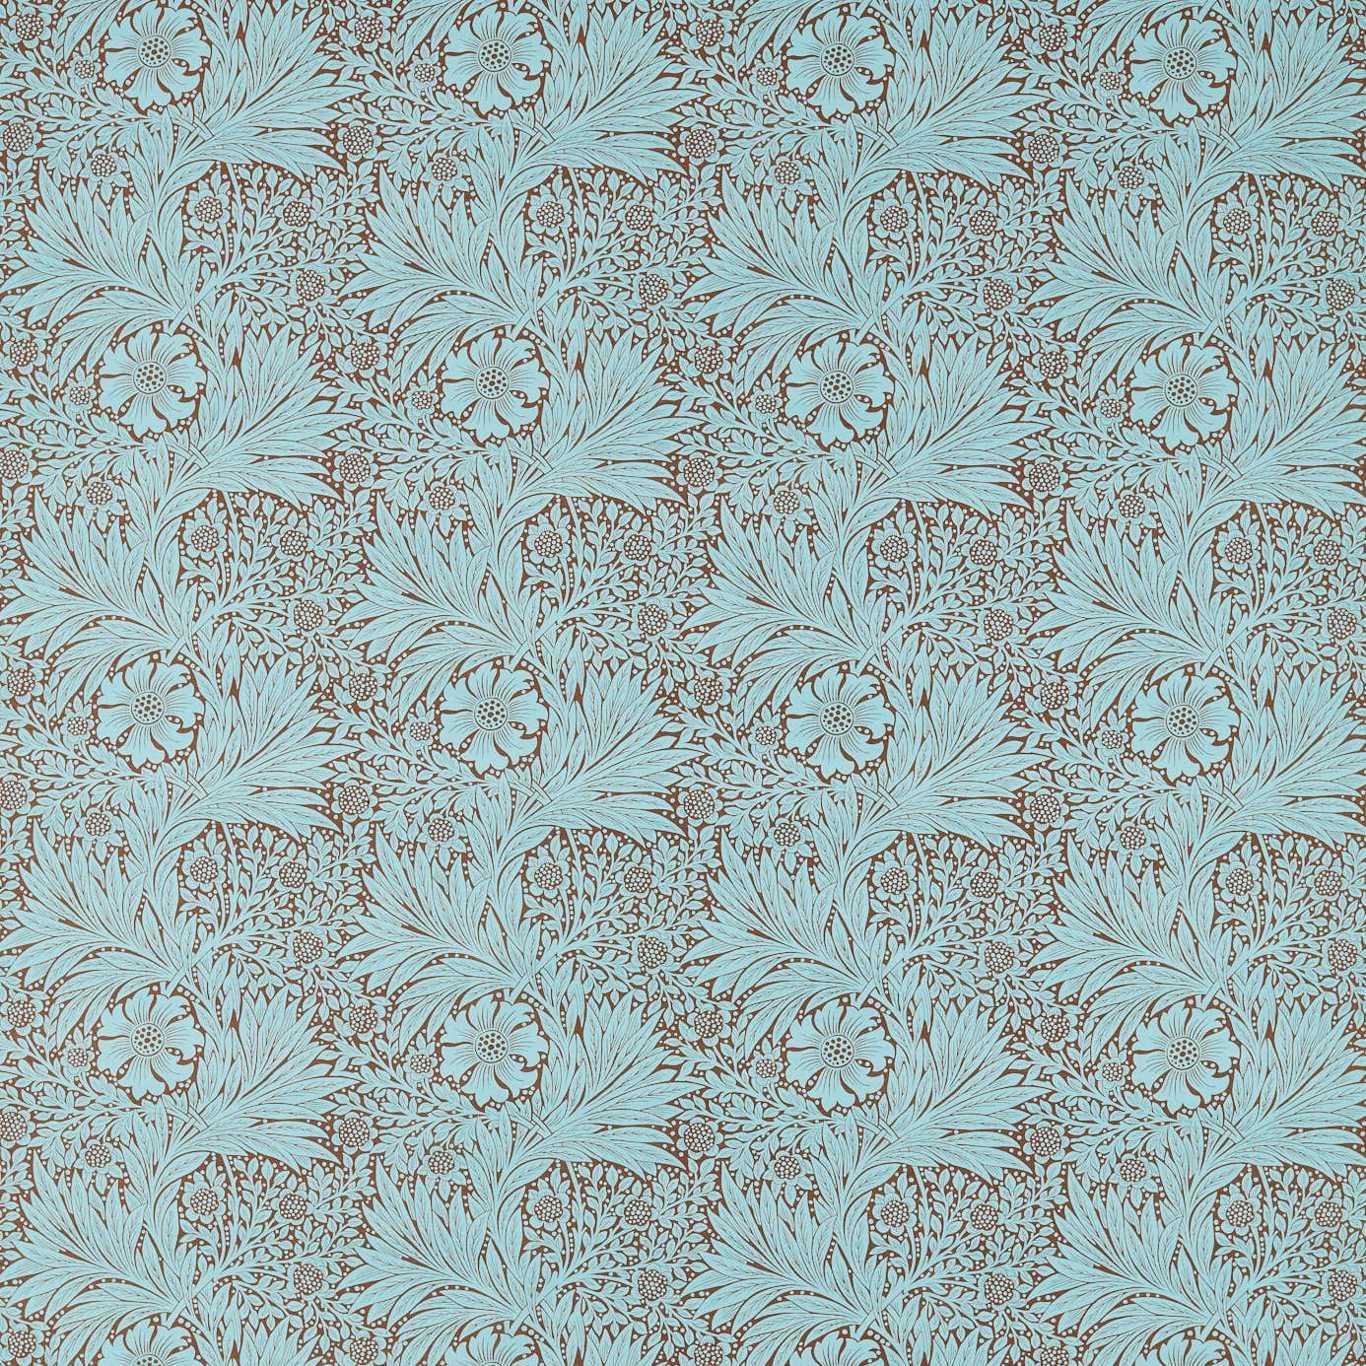 William Morris Fabric- Marigold Linen